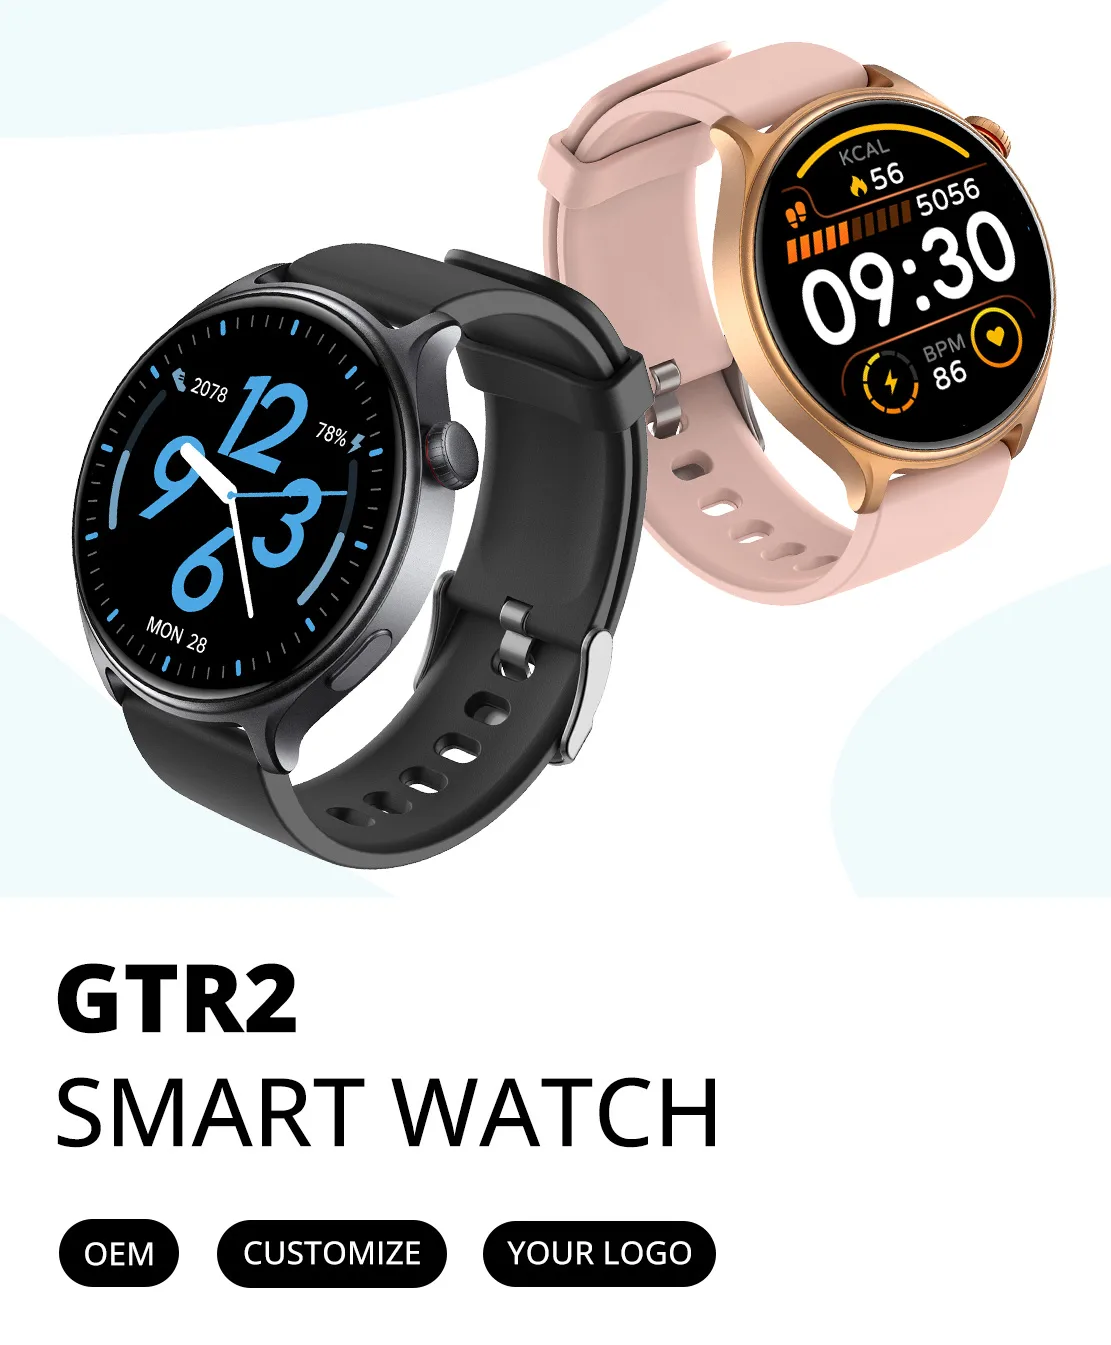 GTR2 Smart Watch Hero Image-mob